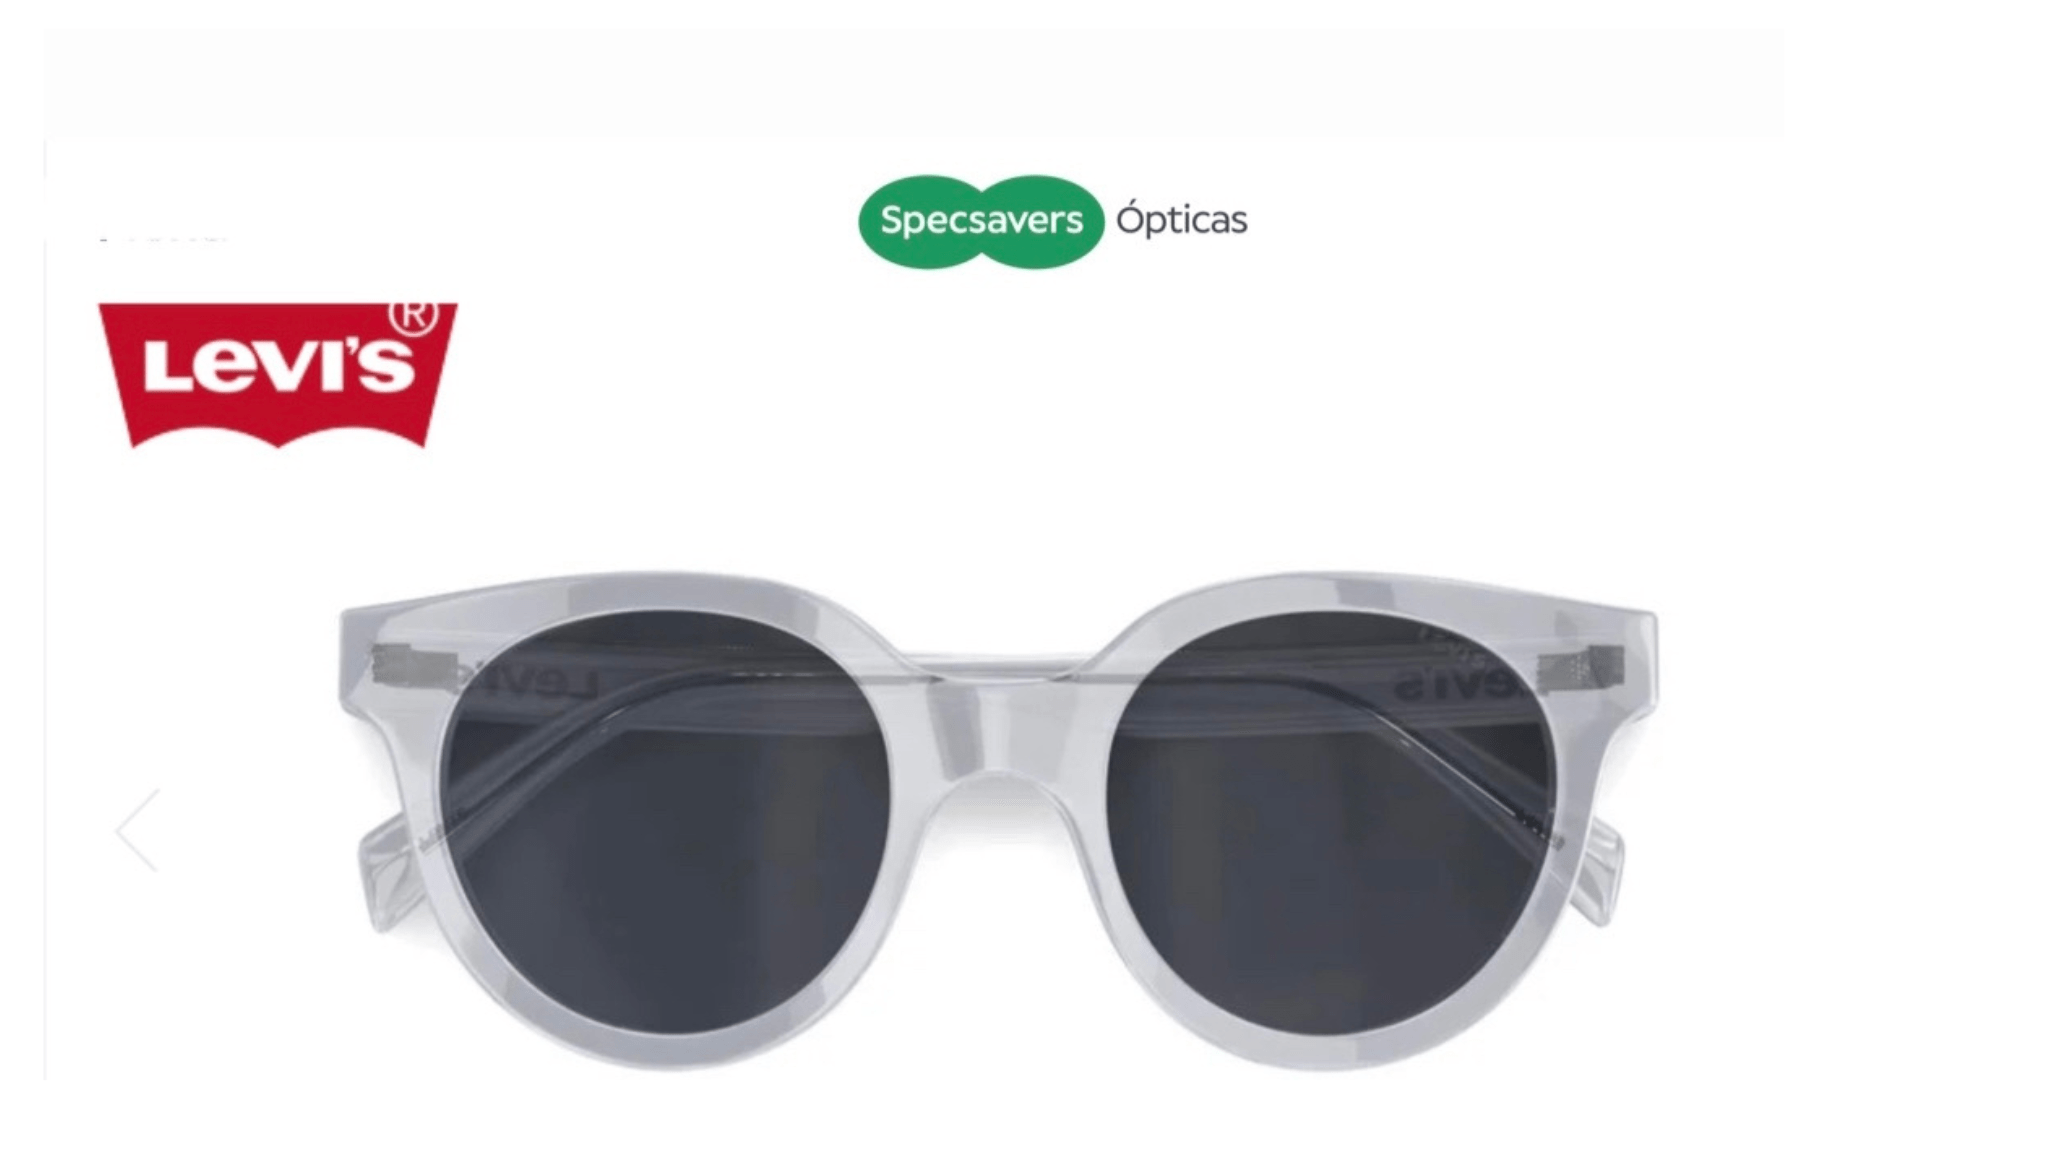 Elige tus gafas de sol de marca con Specsavers